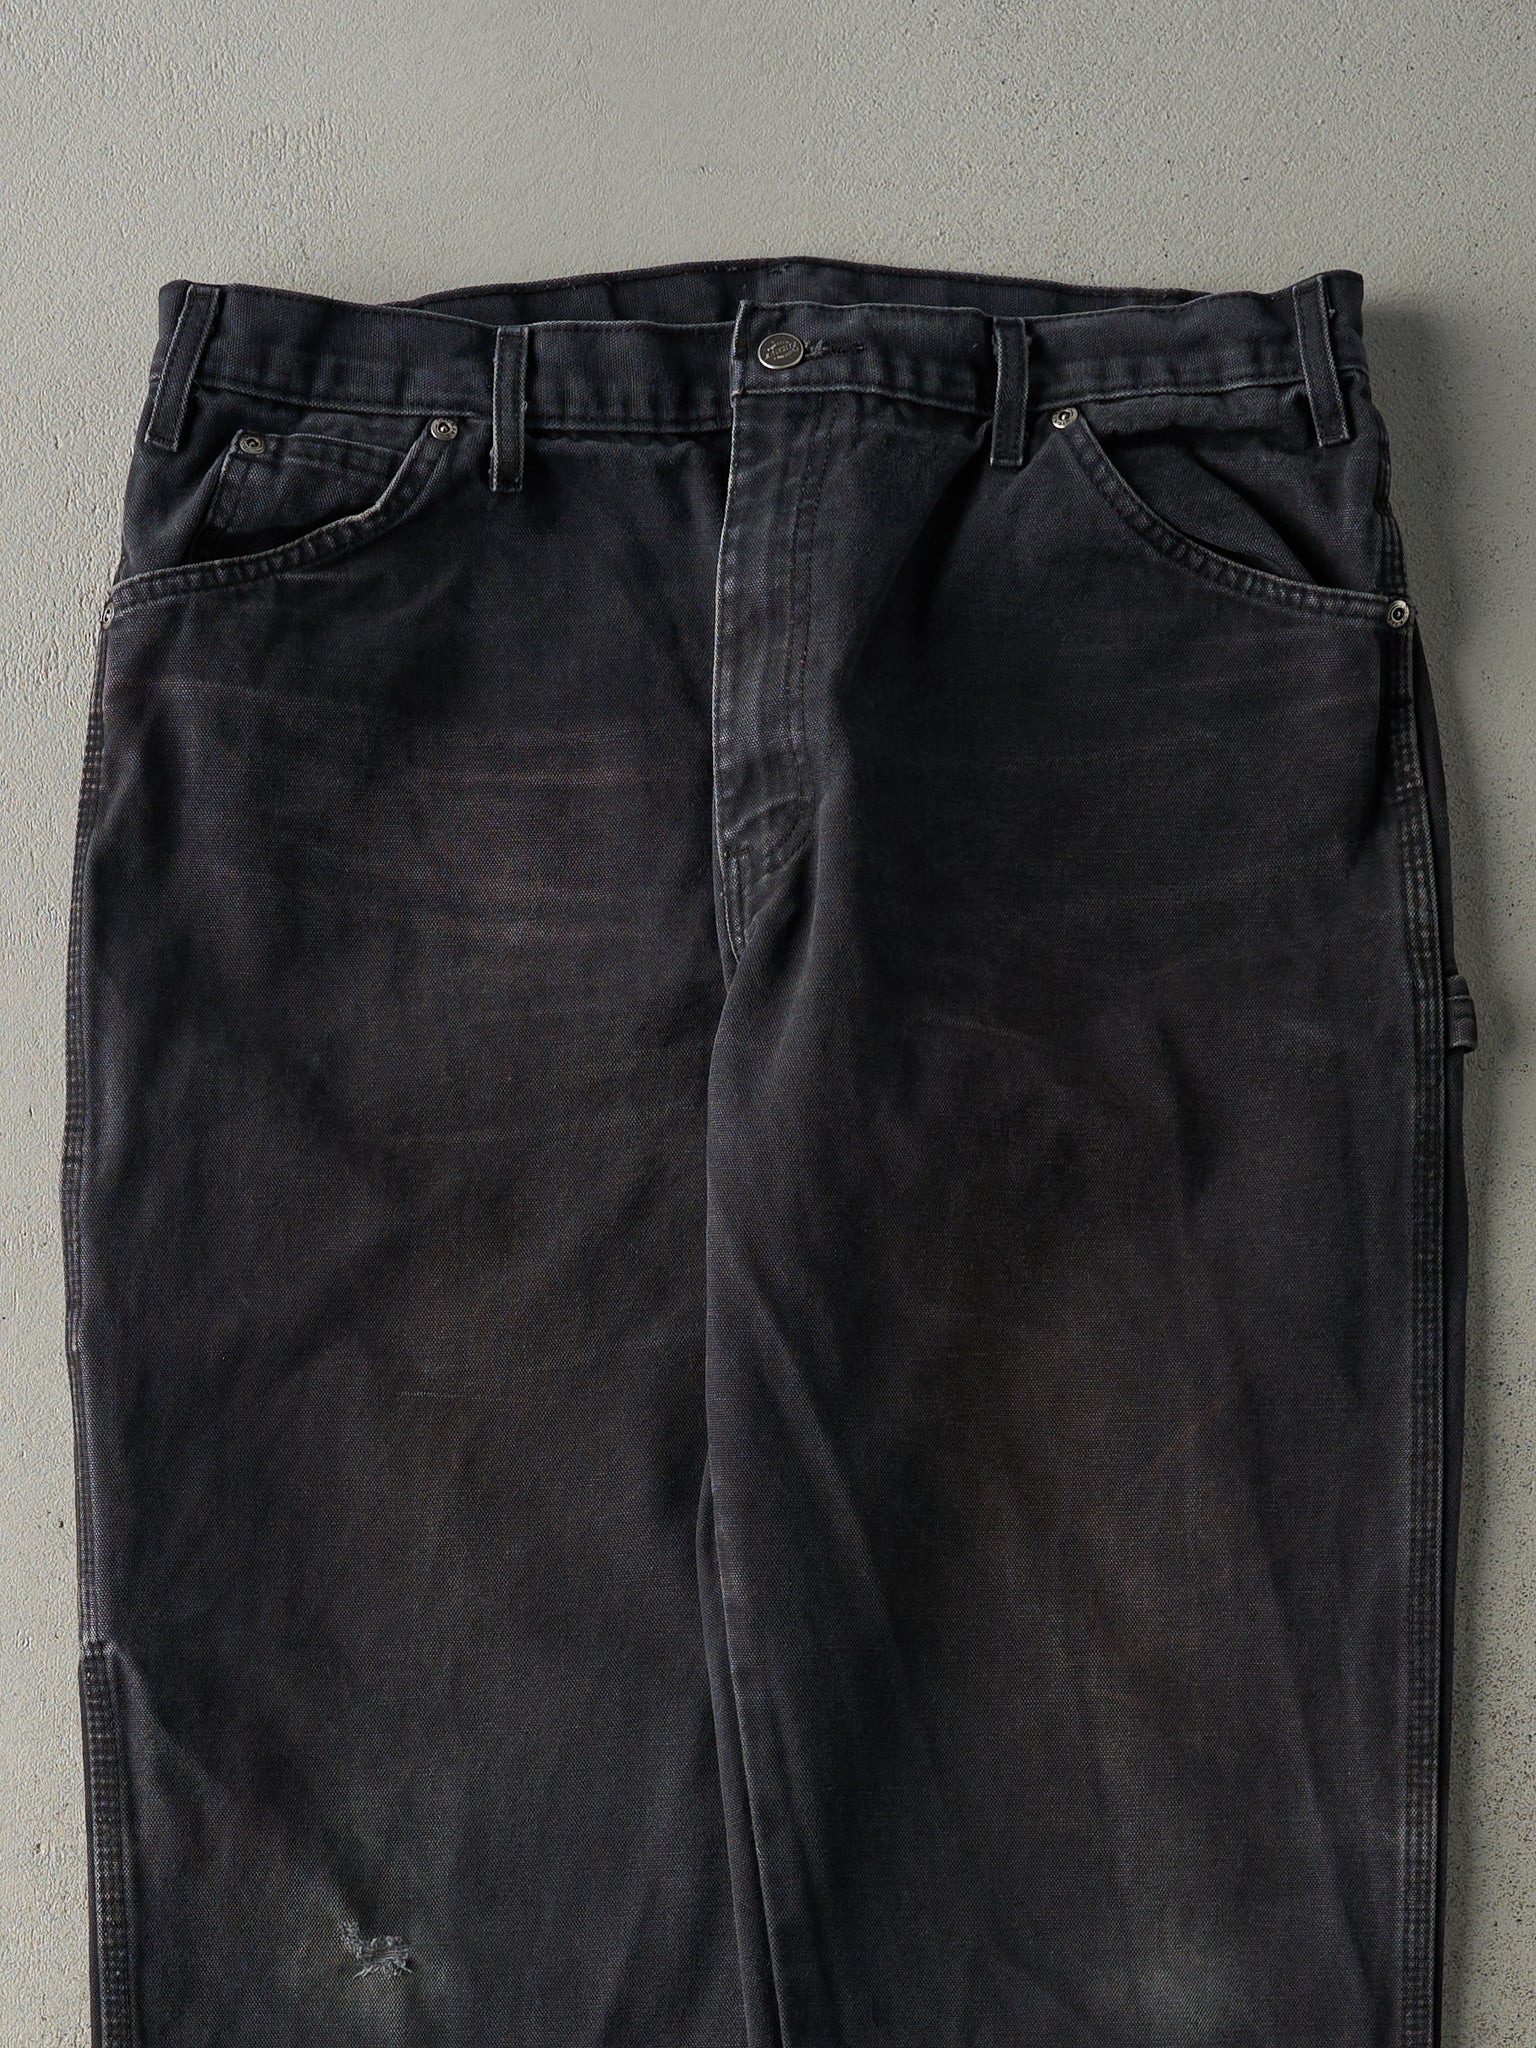 Vintage 90s Faded Black Dickies Carpenter Pants (36x30)